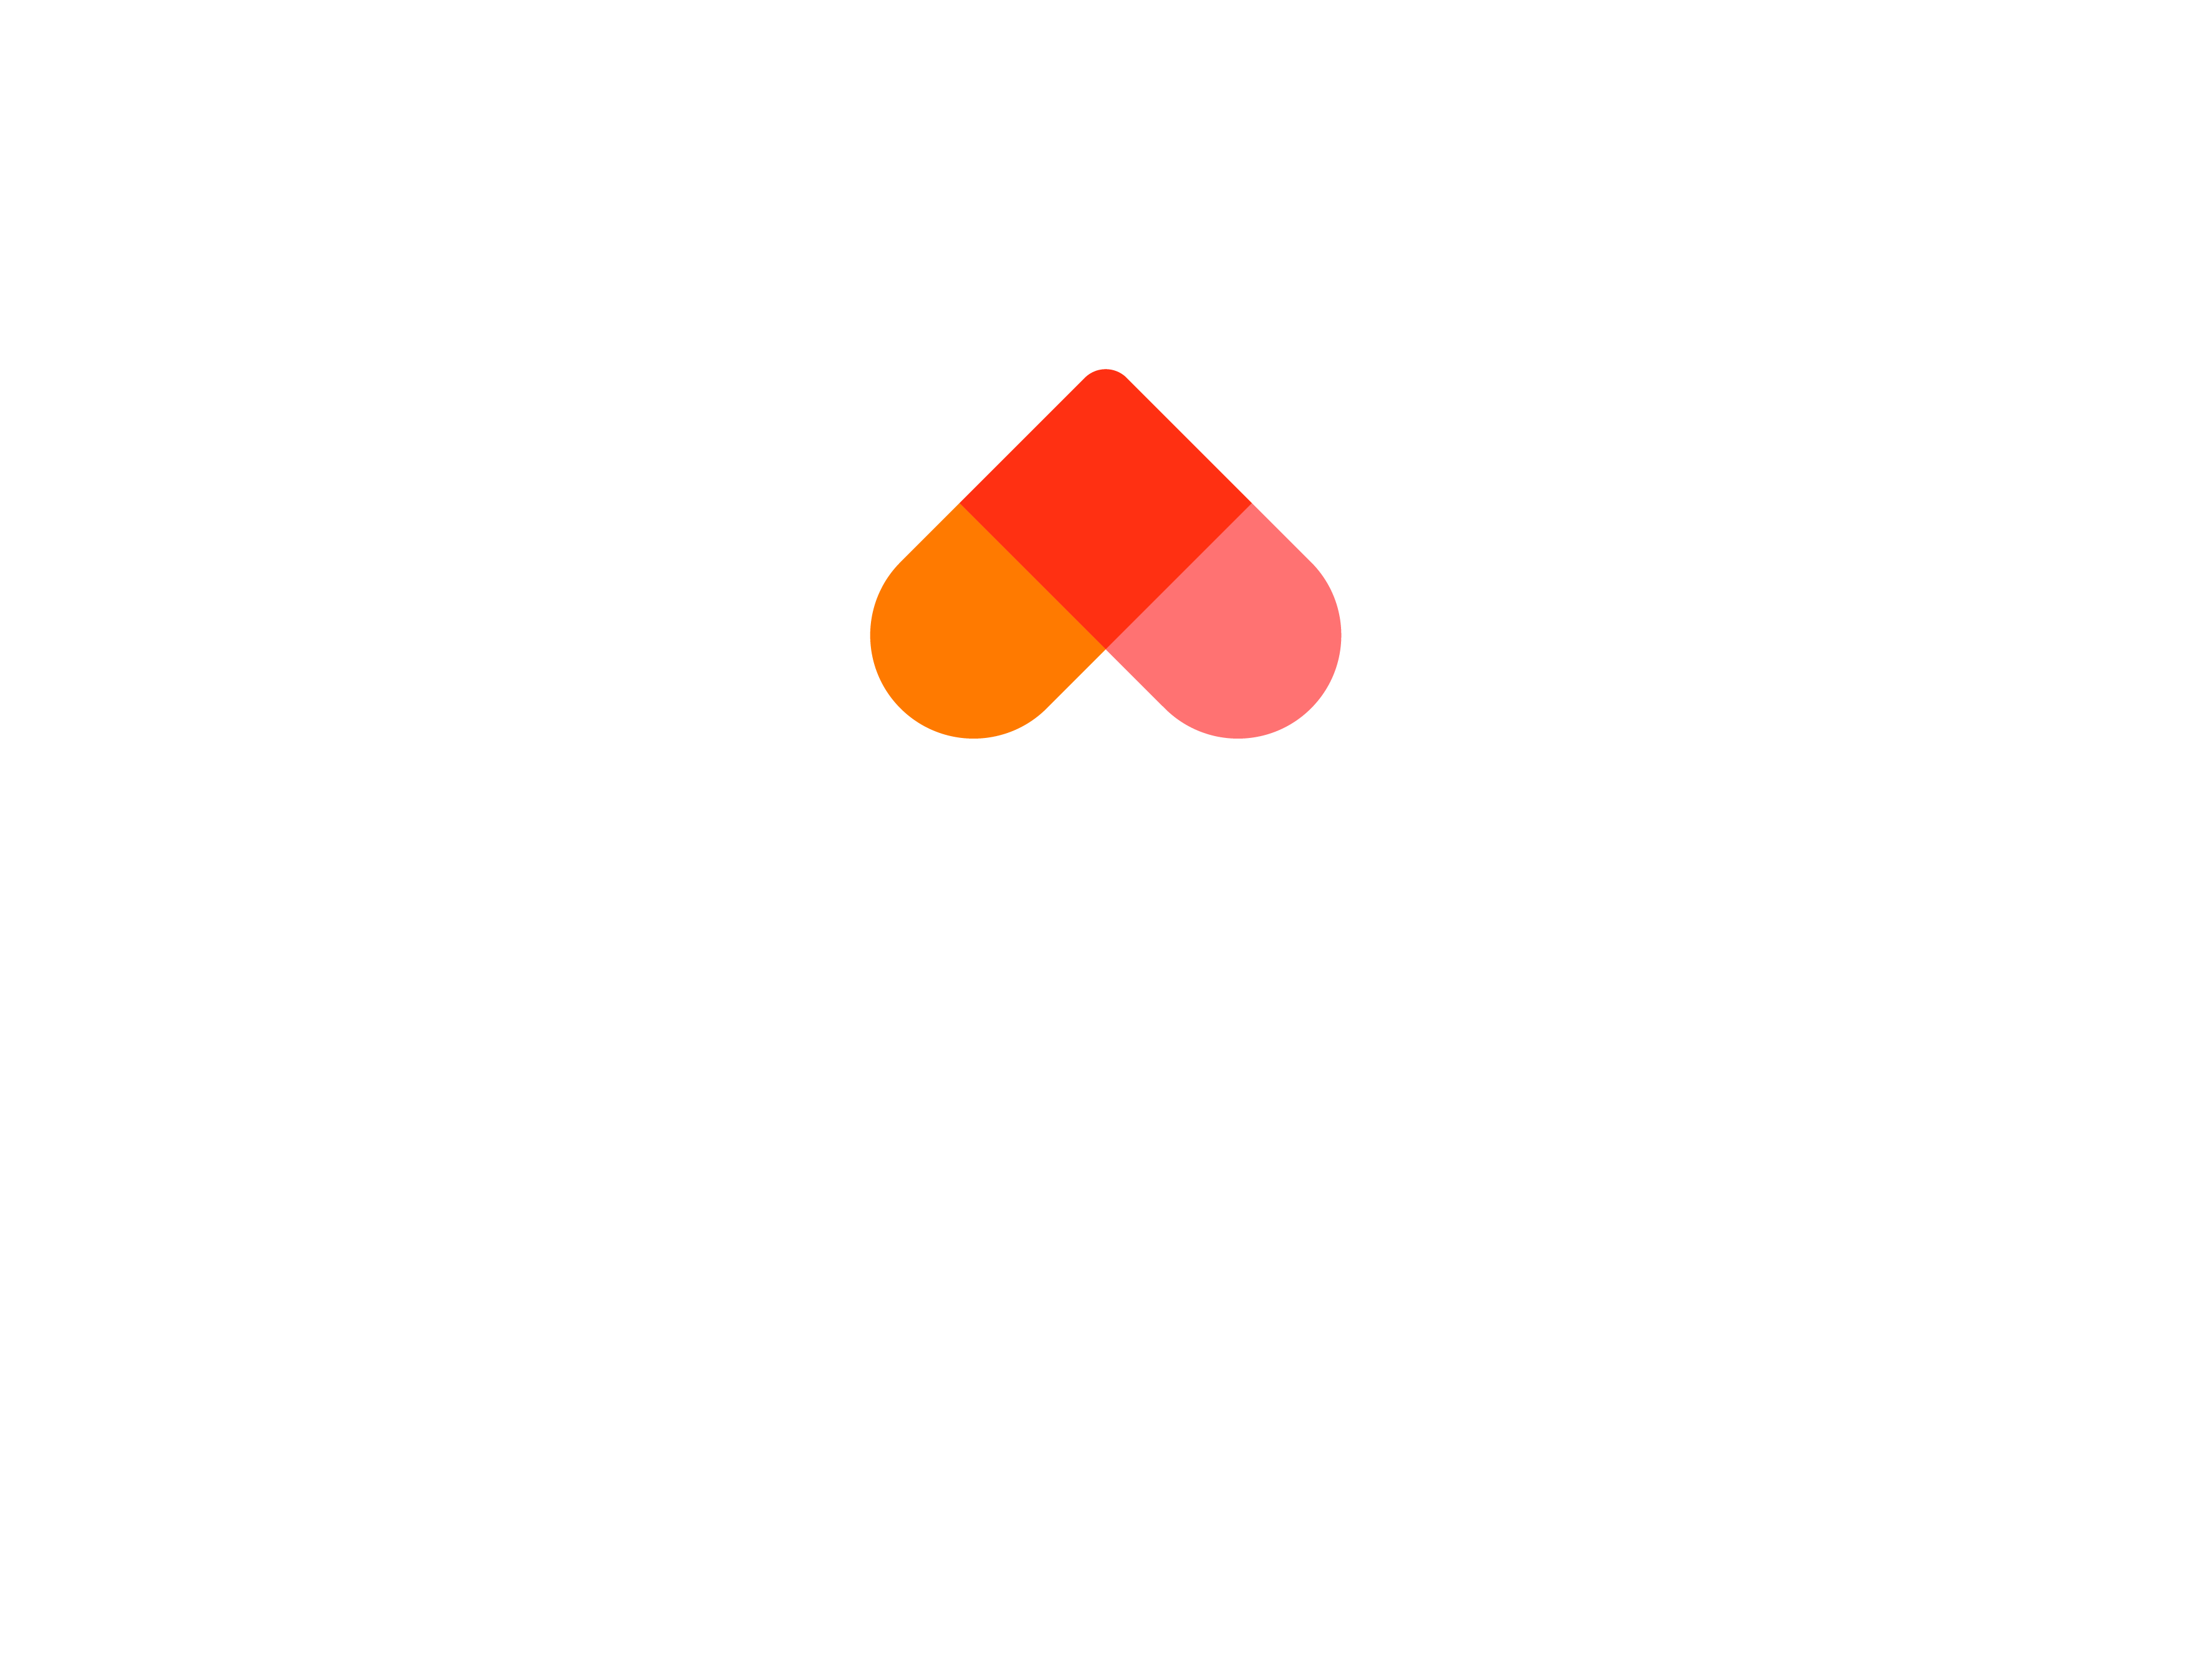 Homecare Association Logo